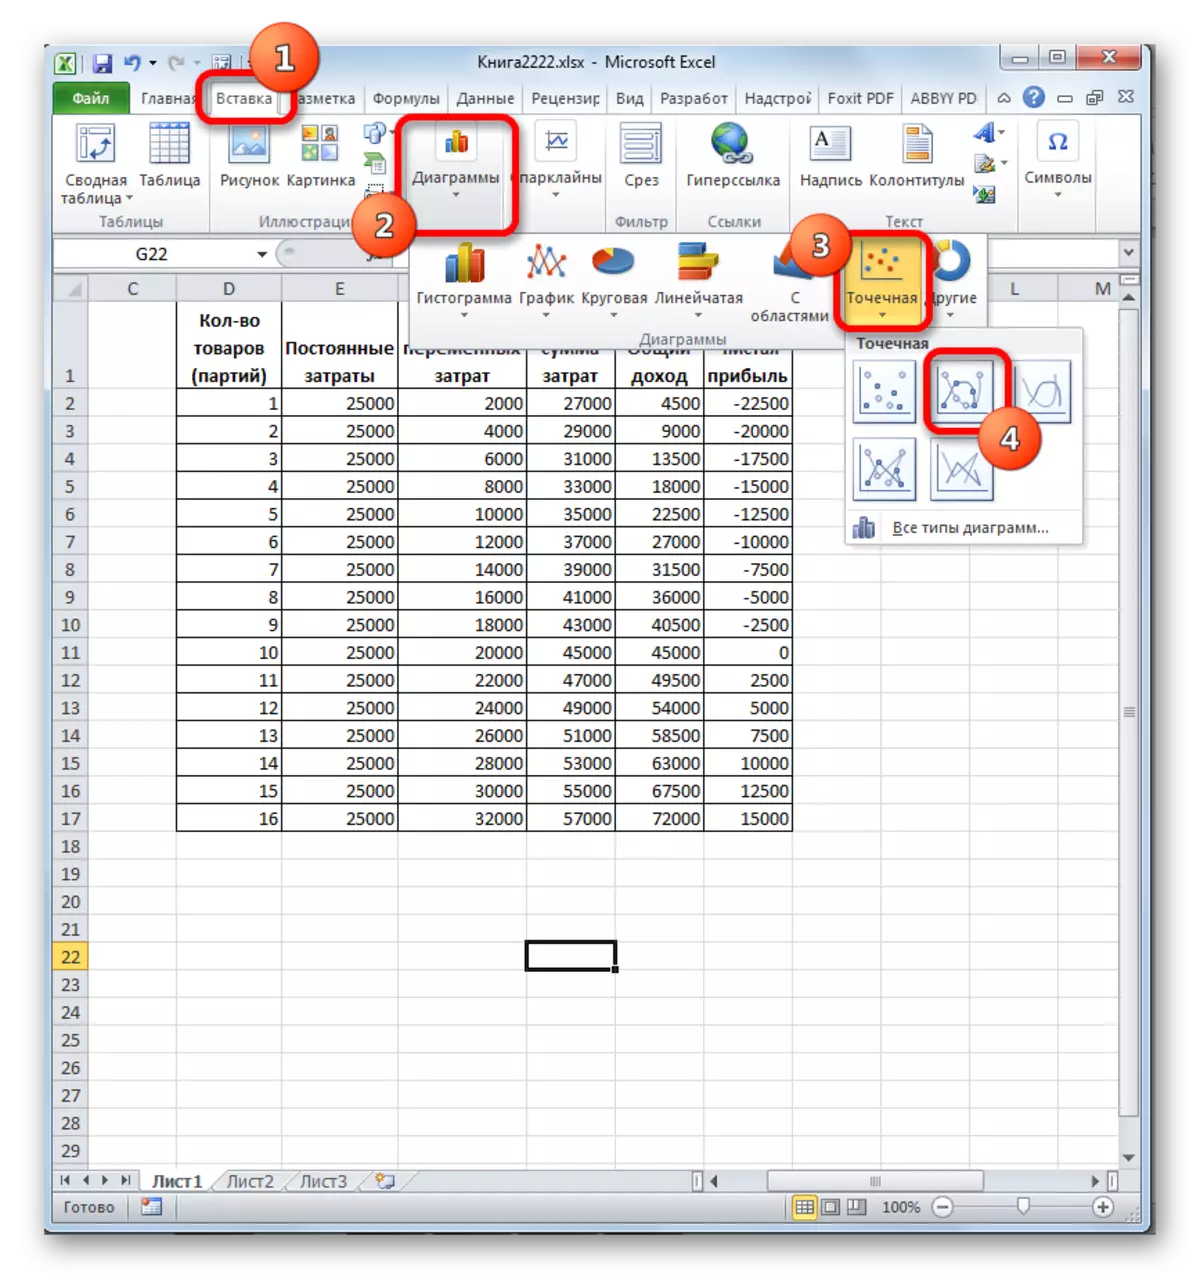 Select da nau'in ginshiƙi a Microsoft Excel